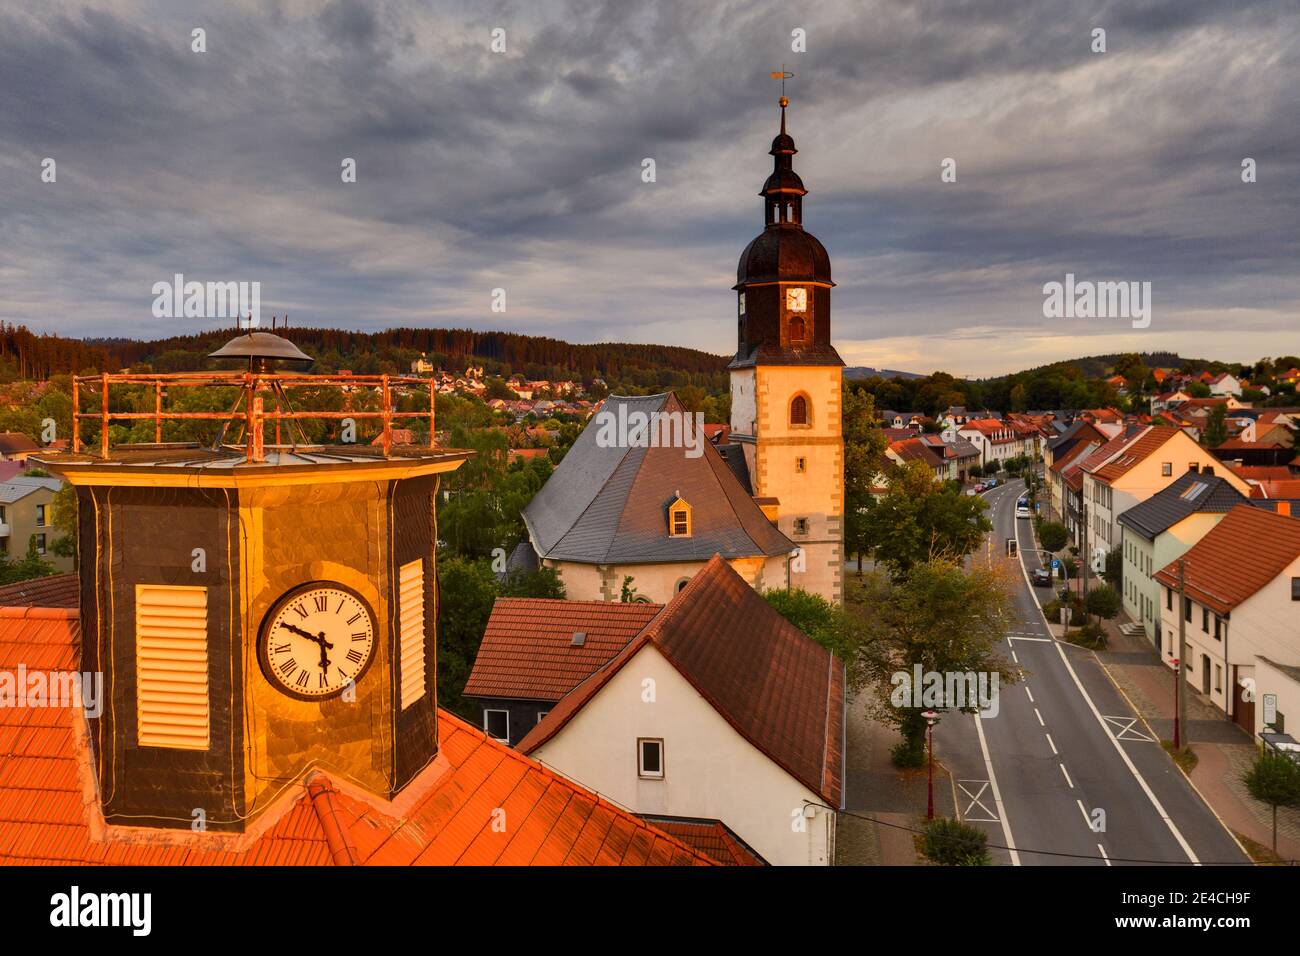 Deutschland, Thüringen, Ilmenau, Langewiesen, Rathausuhr, ehemaliges Rathaus, Hauptstraße, Häuser, Kirche, Morgenlicht Stockfoto